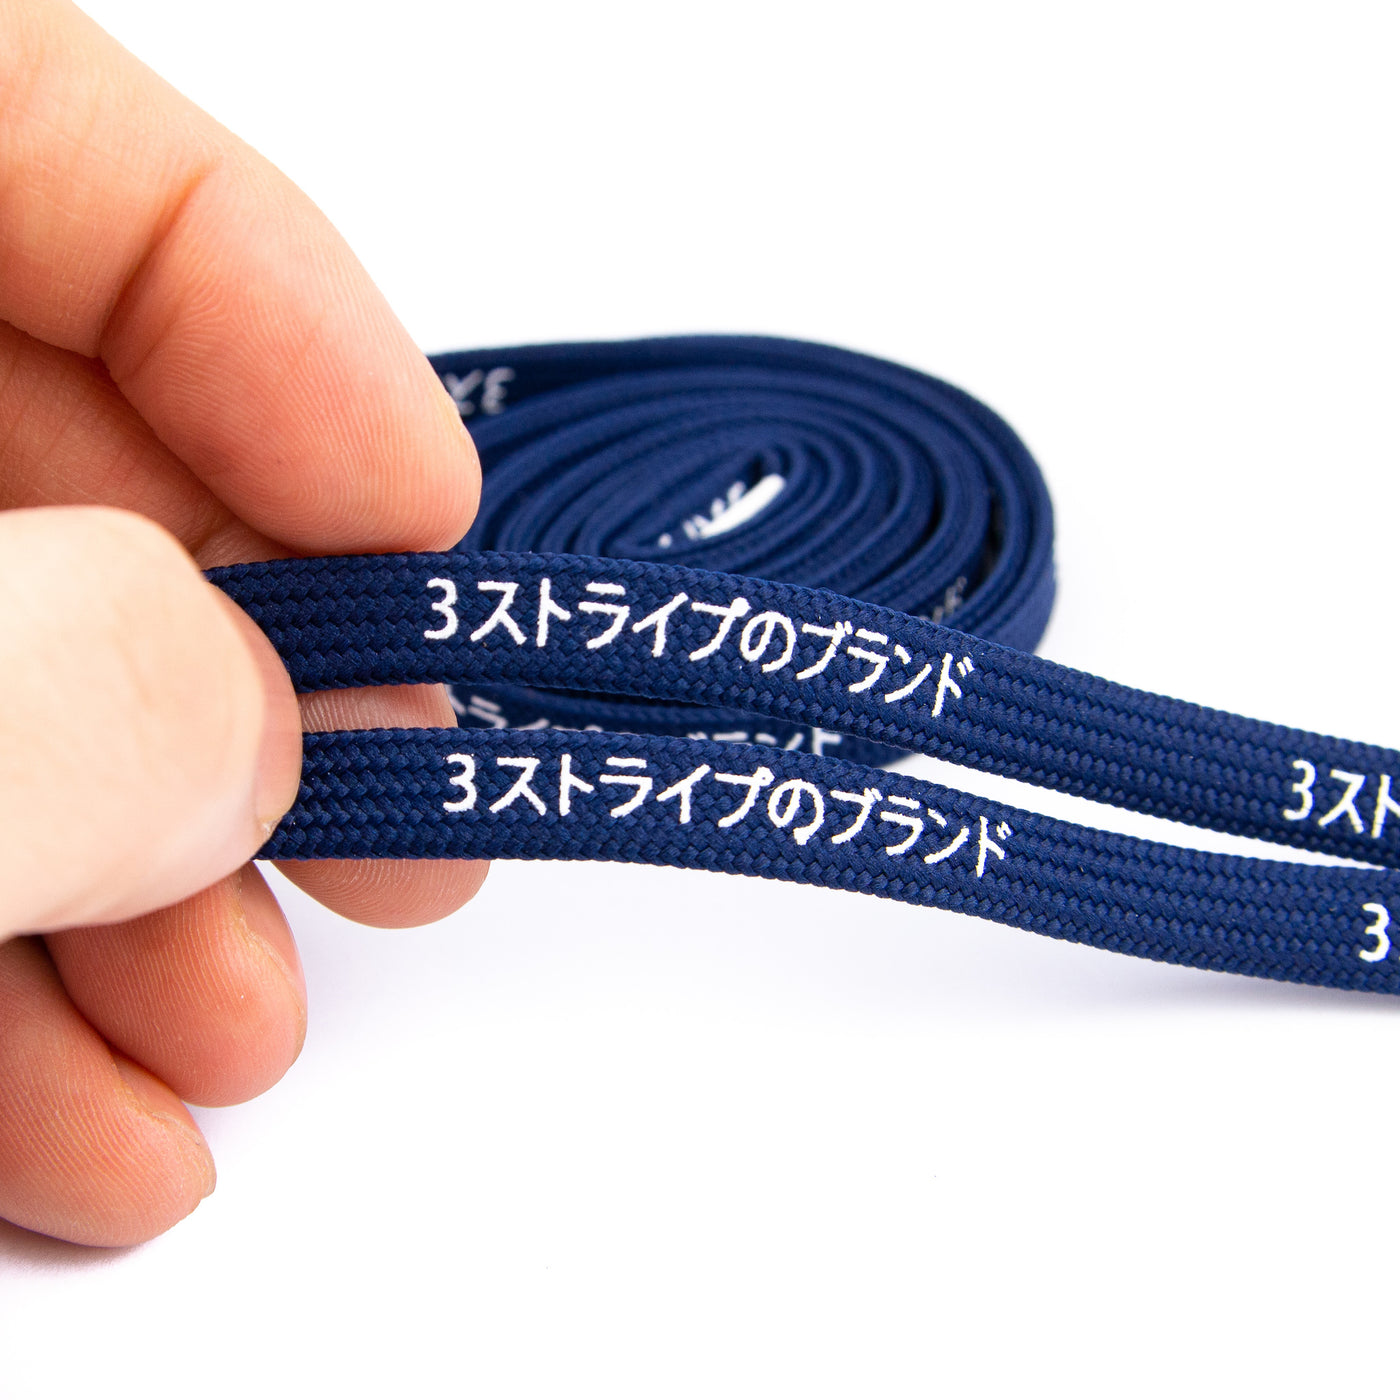 Navy Blue Katakana Laces